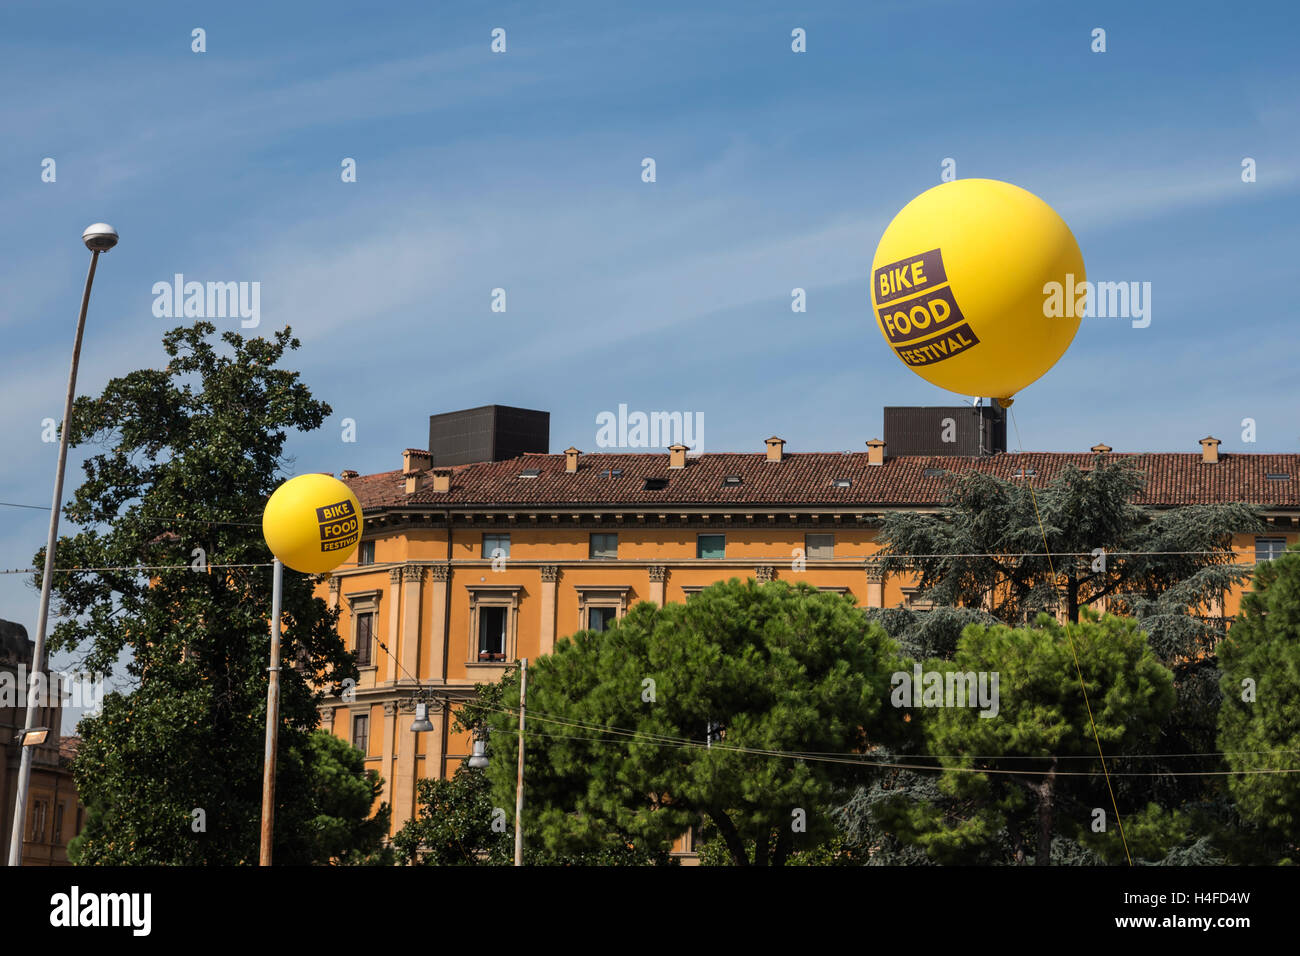 Énormes ballons jaunes lumineux au-dessus des toits de la ville, Bologne, Italie, Europe Banque D'Images